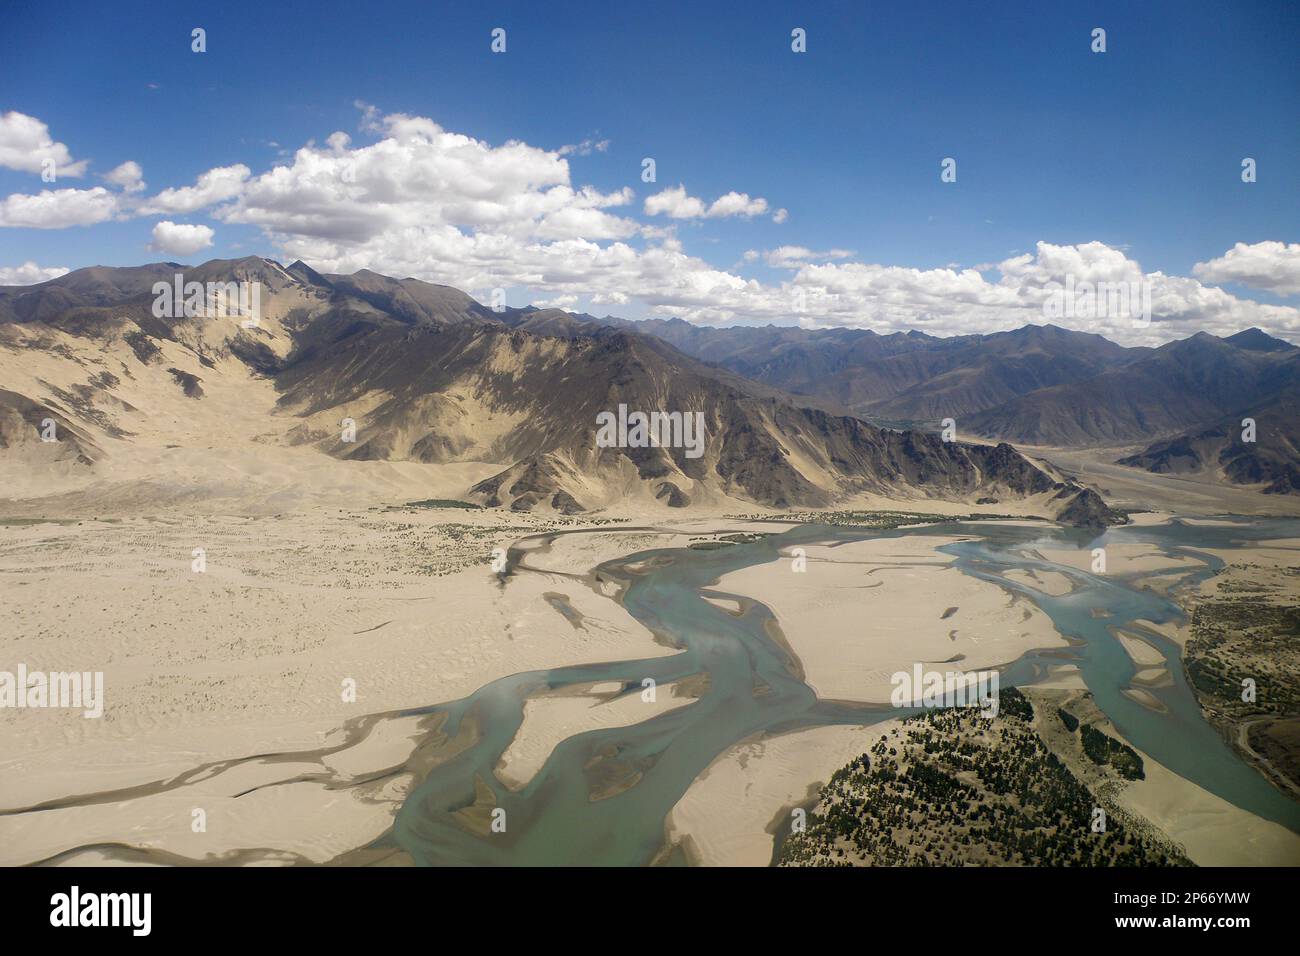 Aerial view, Tibet, China Stock Photo